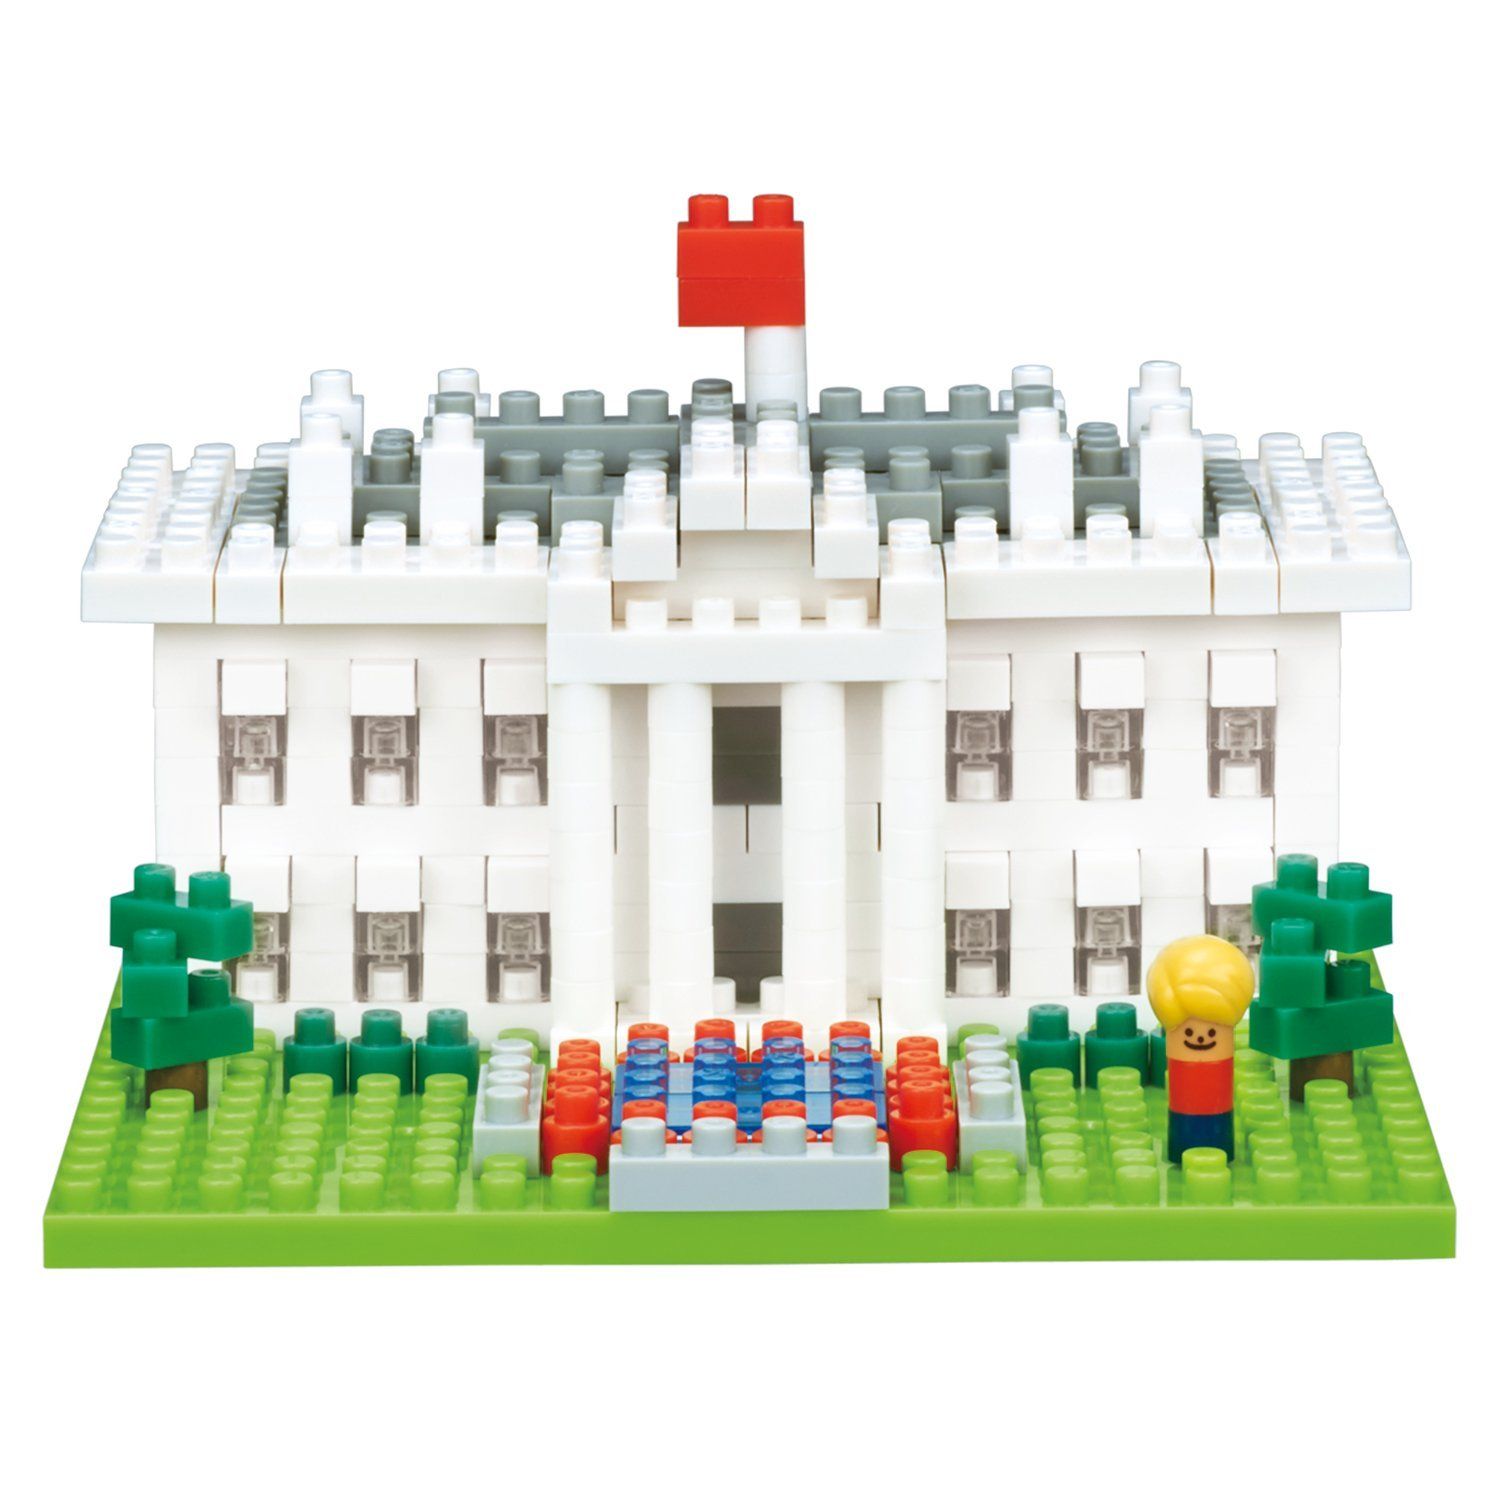 Nanoblock - The White House